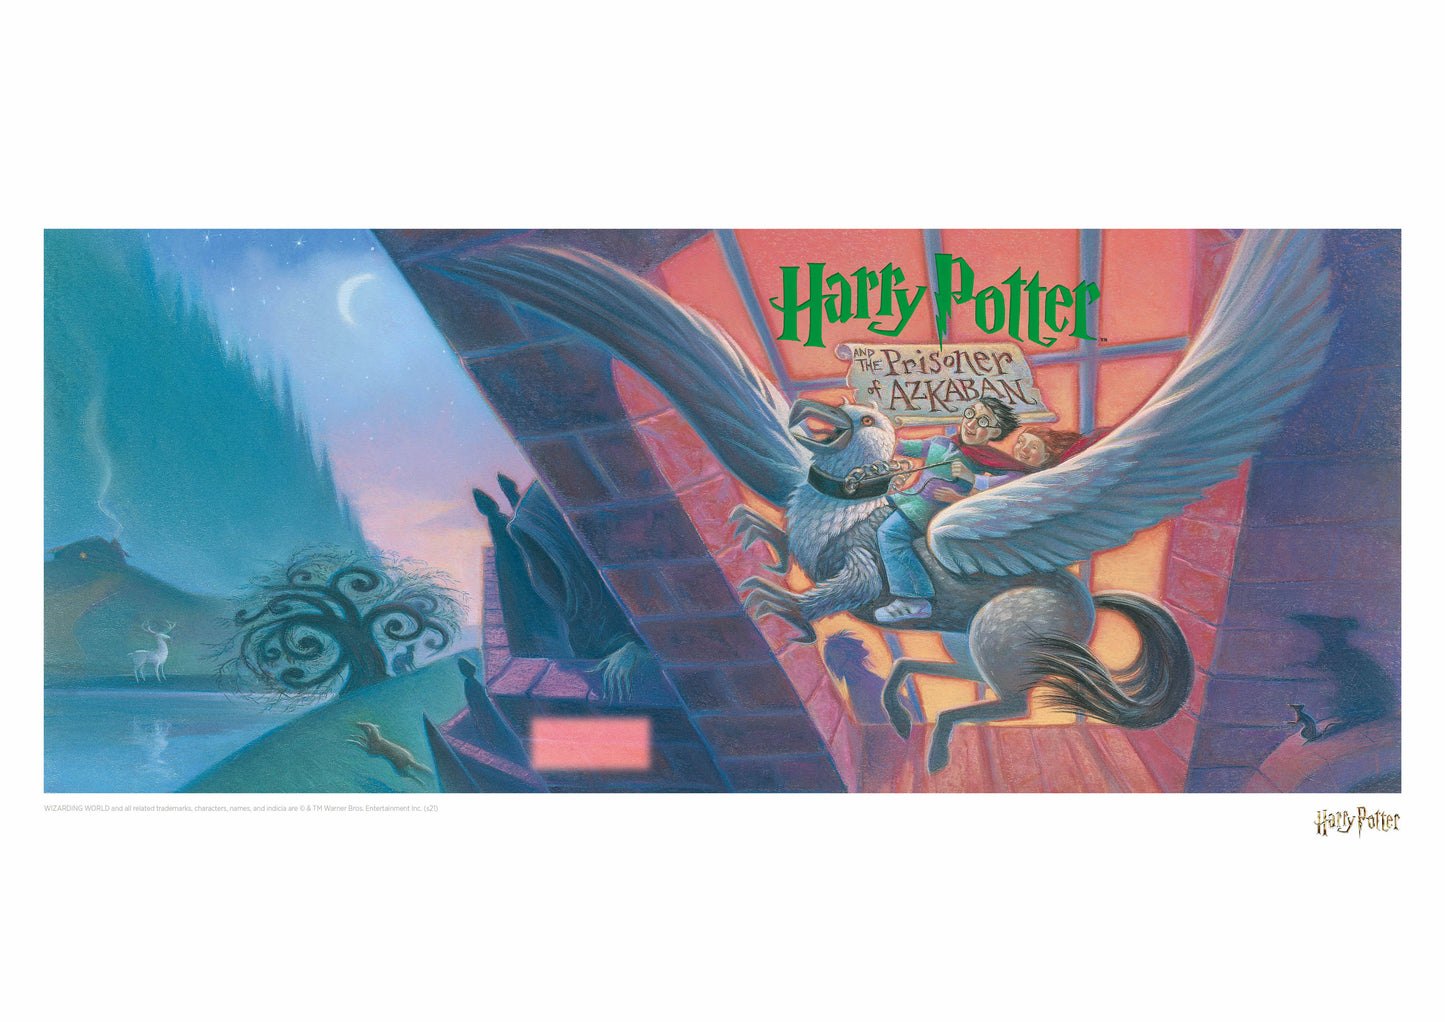 Harry Potter Book Cover - The Prisoner of Azkaban Artwork